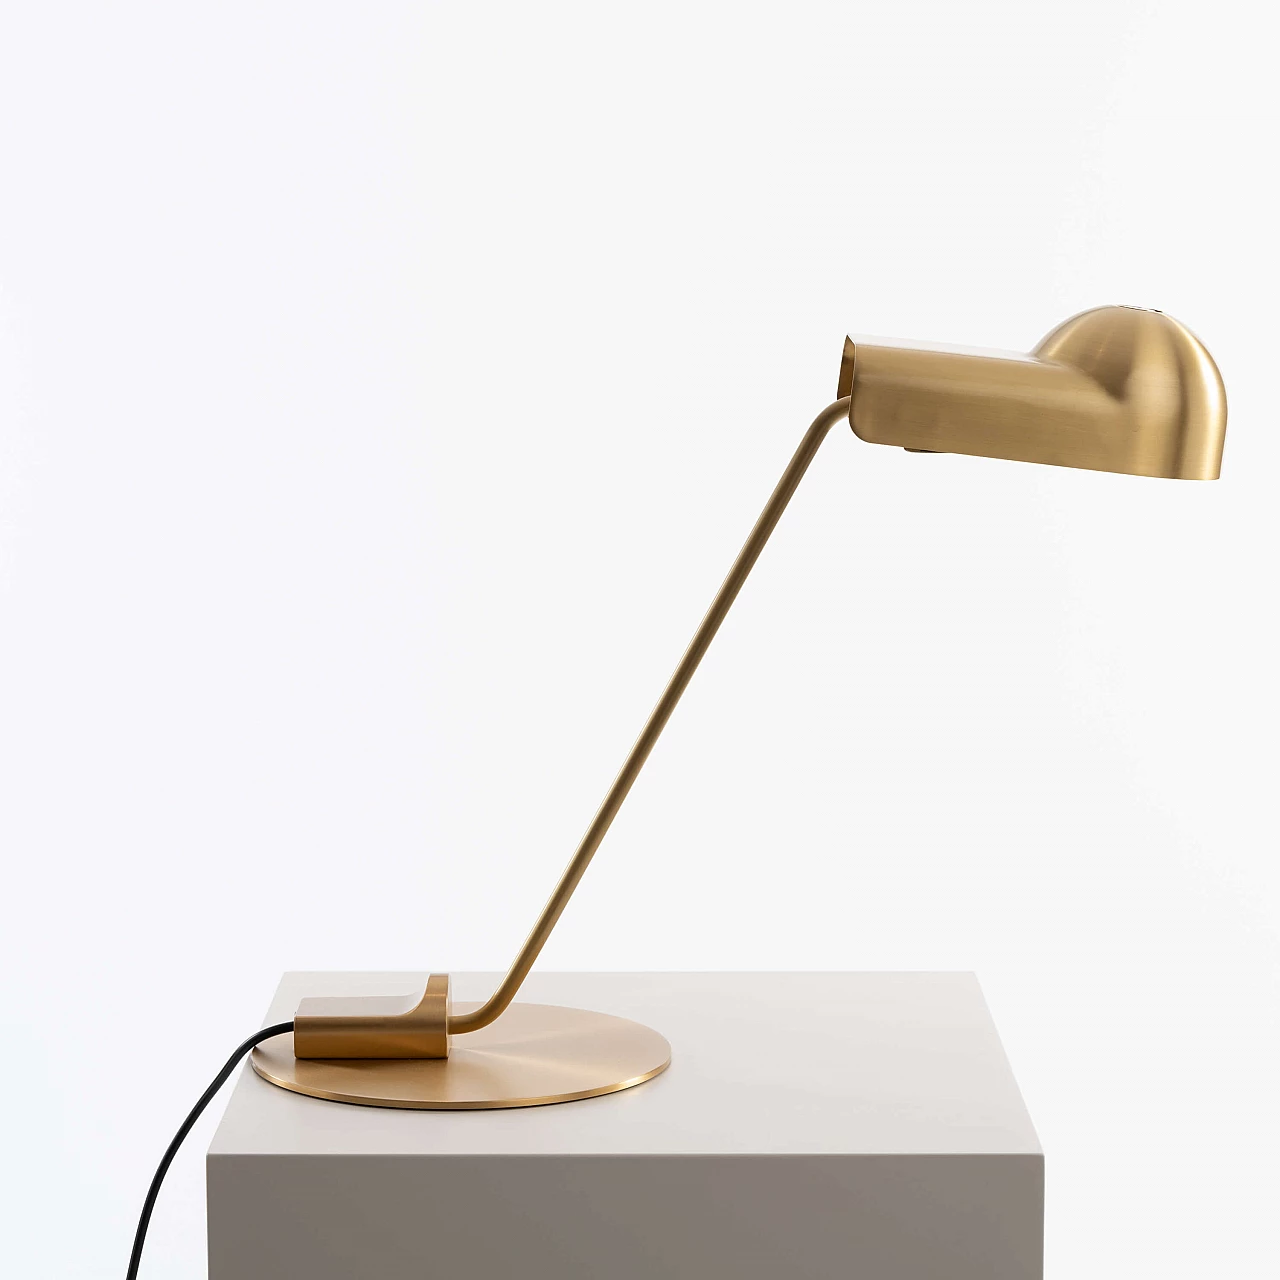 Domo table lamp by Joe Colombo for Karakter Copenhagen 2